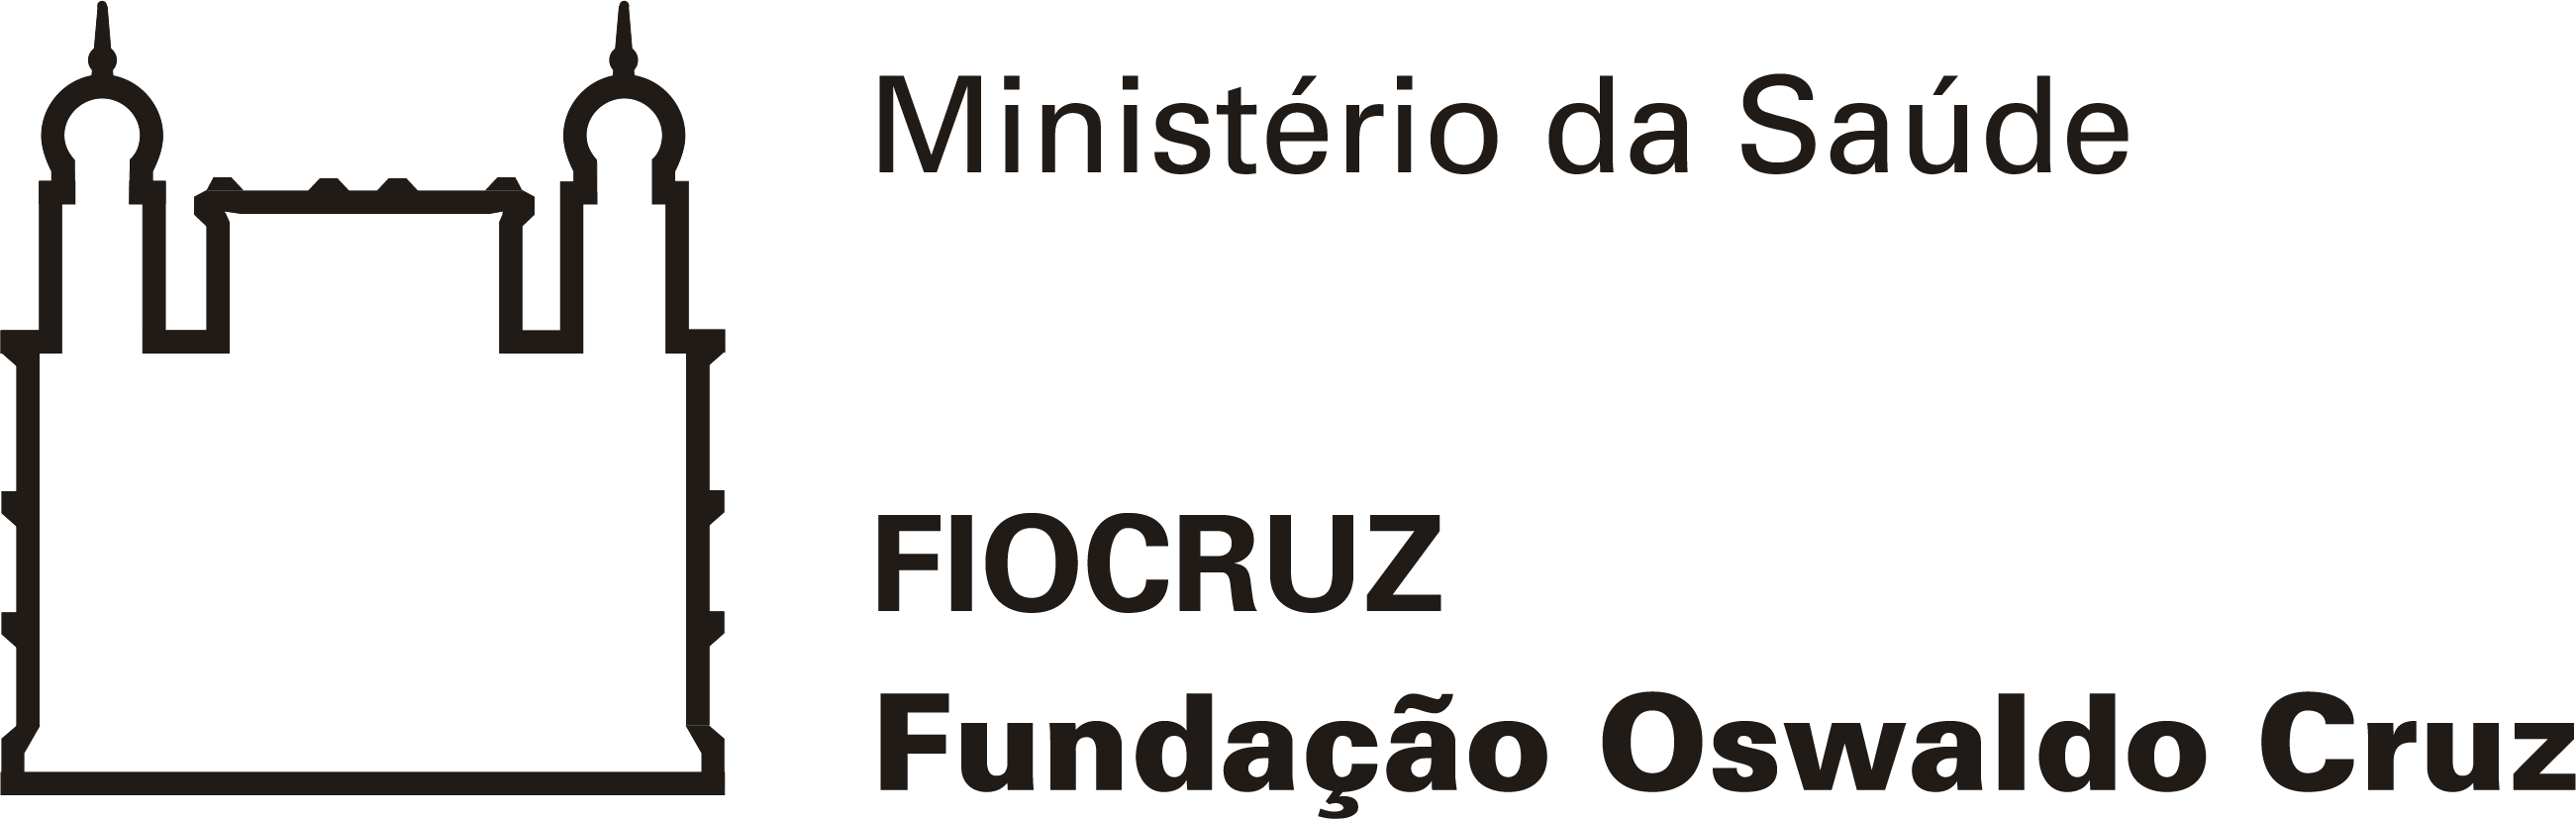 Fiocruz logo